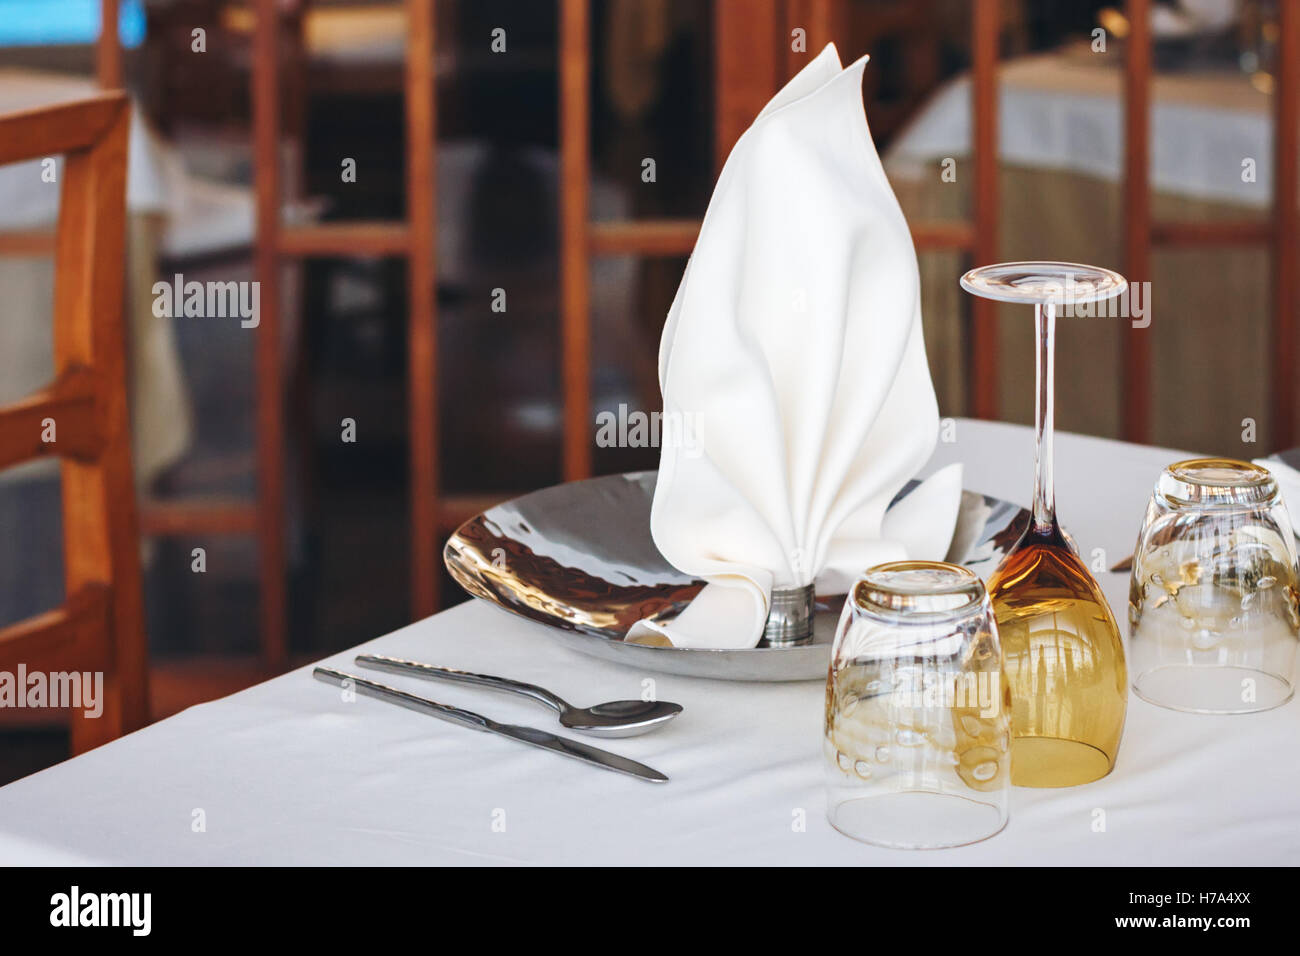 Vaisselle vide en restaurant, set de table Banque D'Images